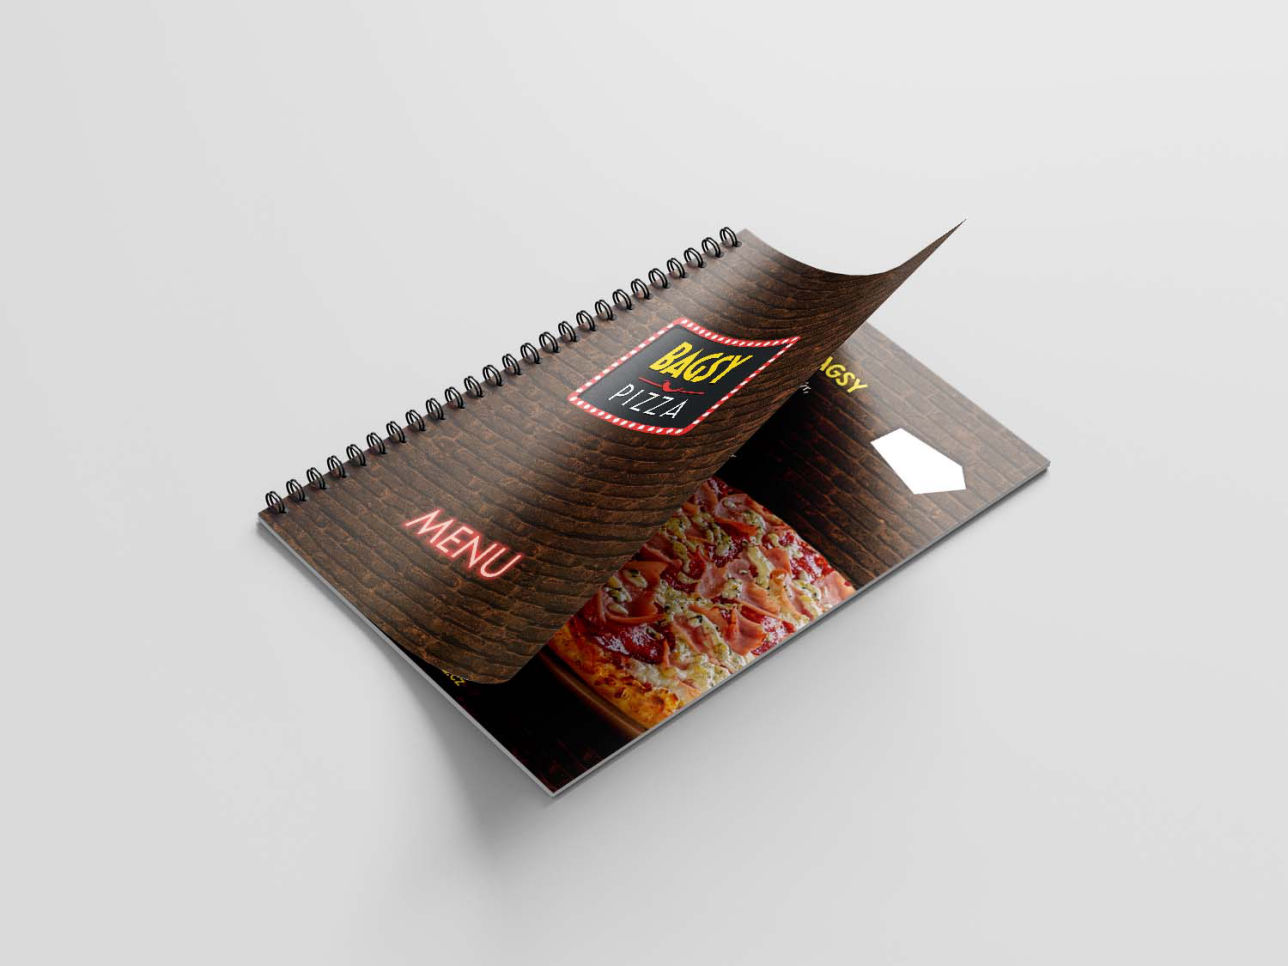 Bagsy pizza menu brožura s kroužkovou vazbou